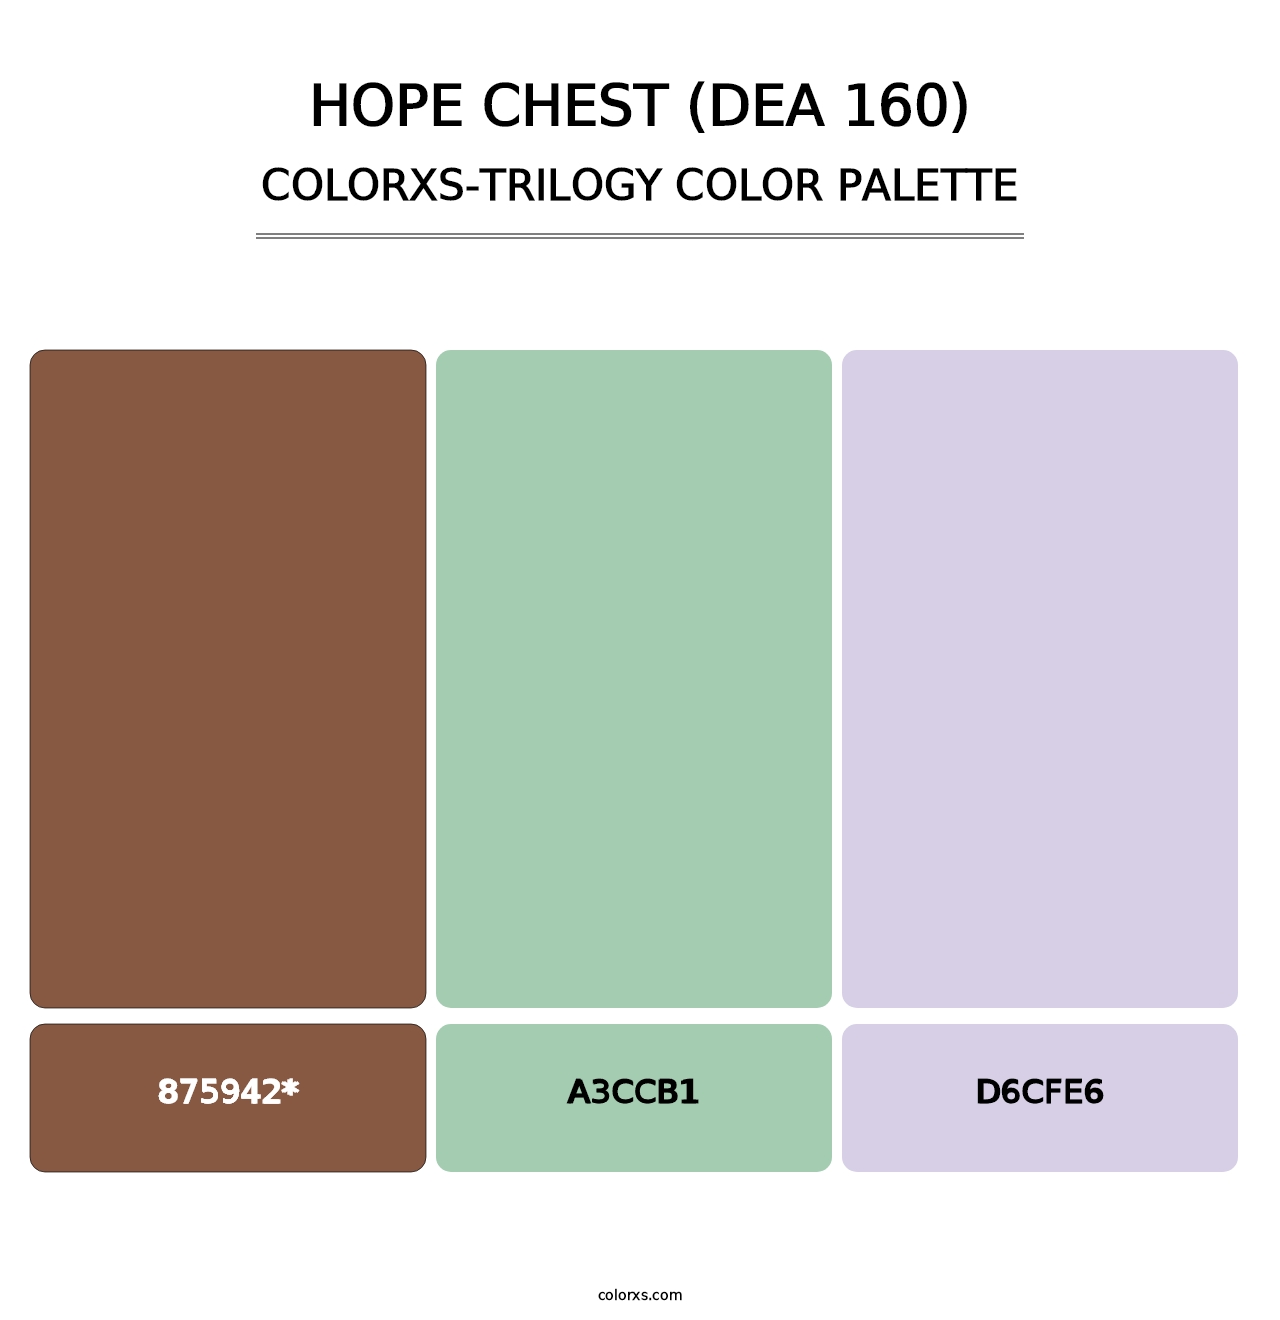 Hope Chest (DEA 160) - Colorxs Trilogy Palette